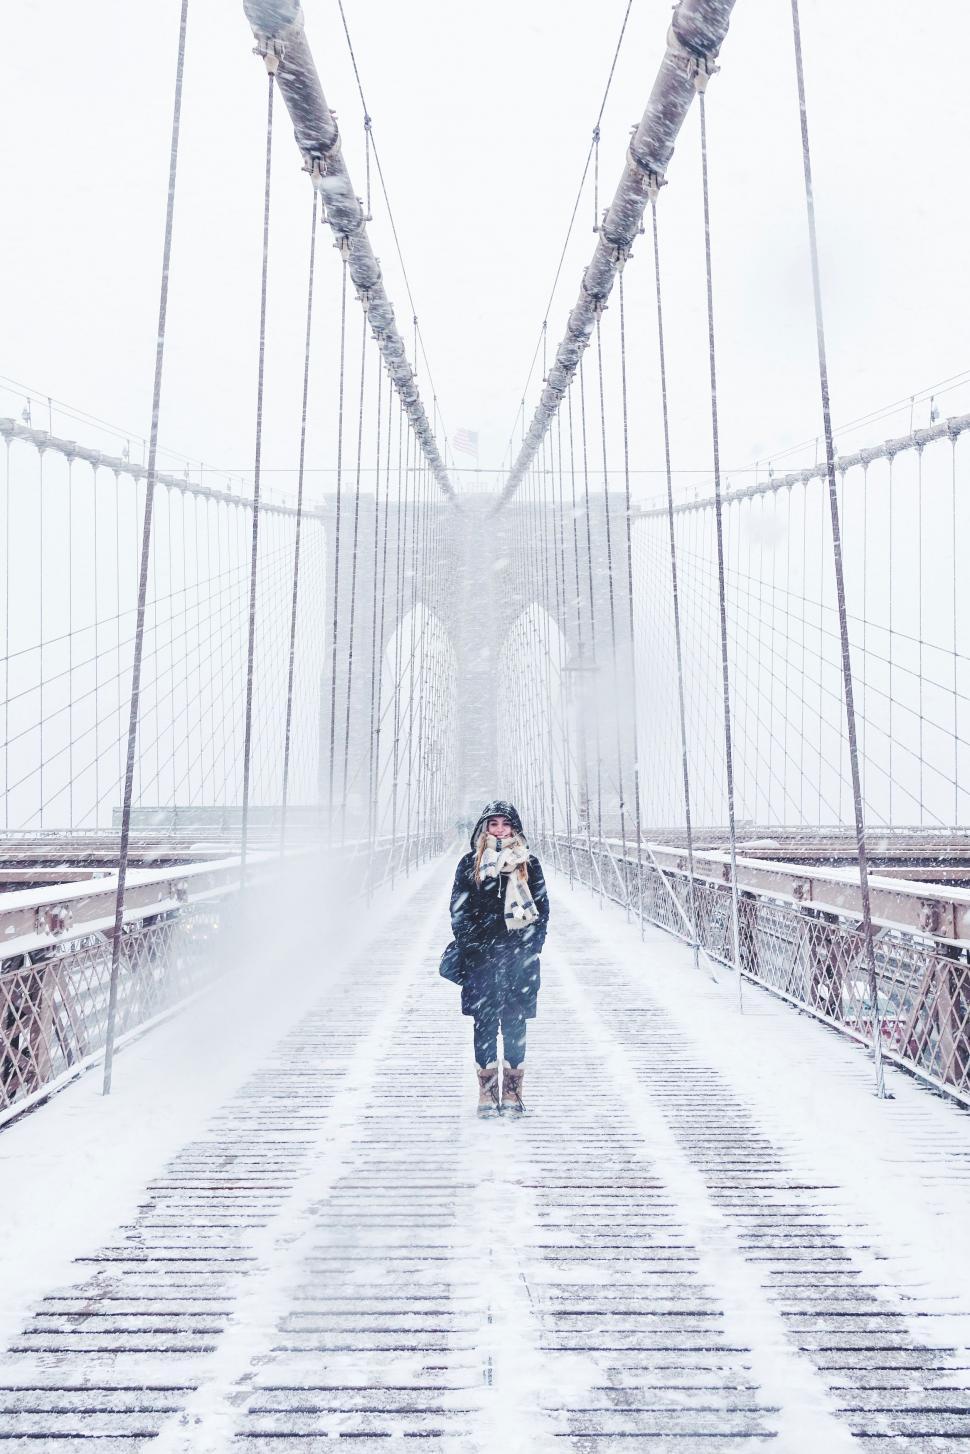 Free Image of Woman Walking Across Snowy Bridge 